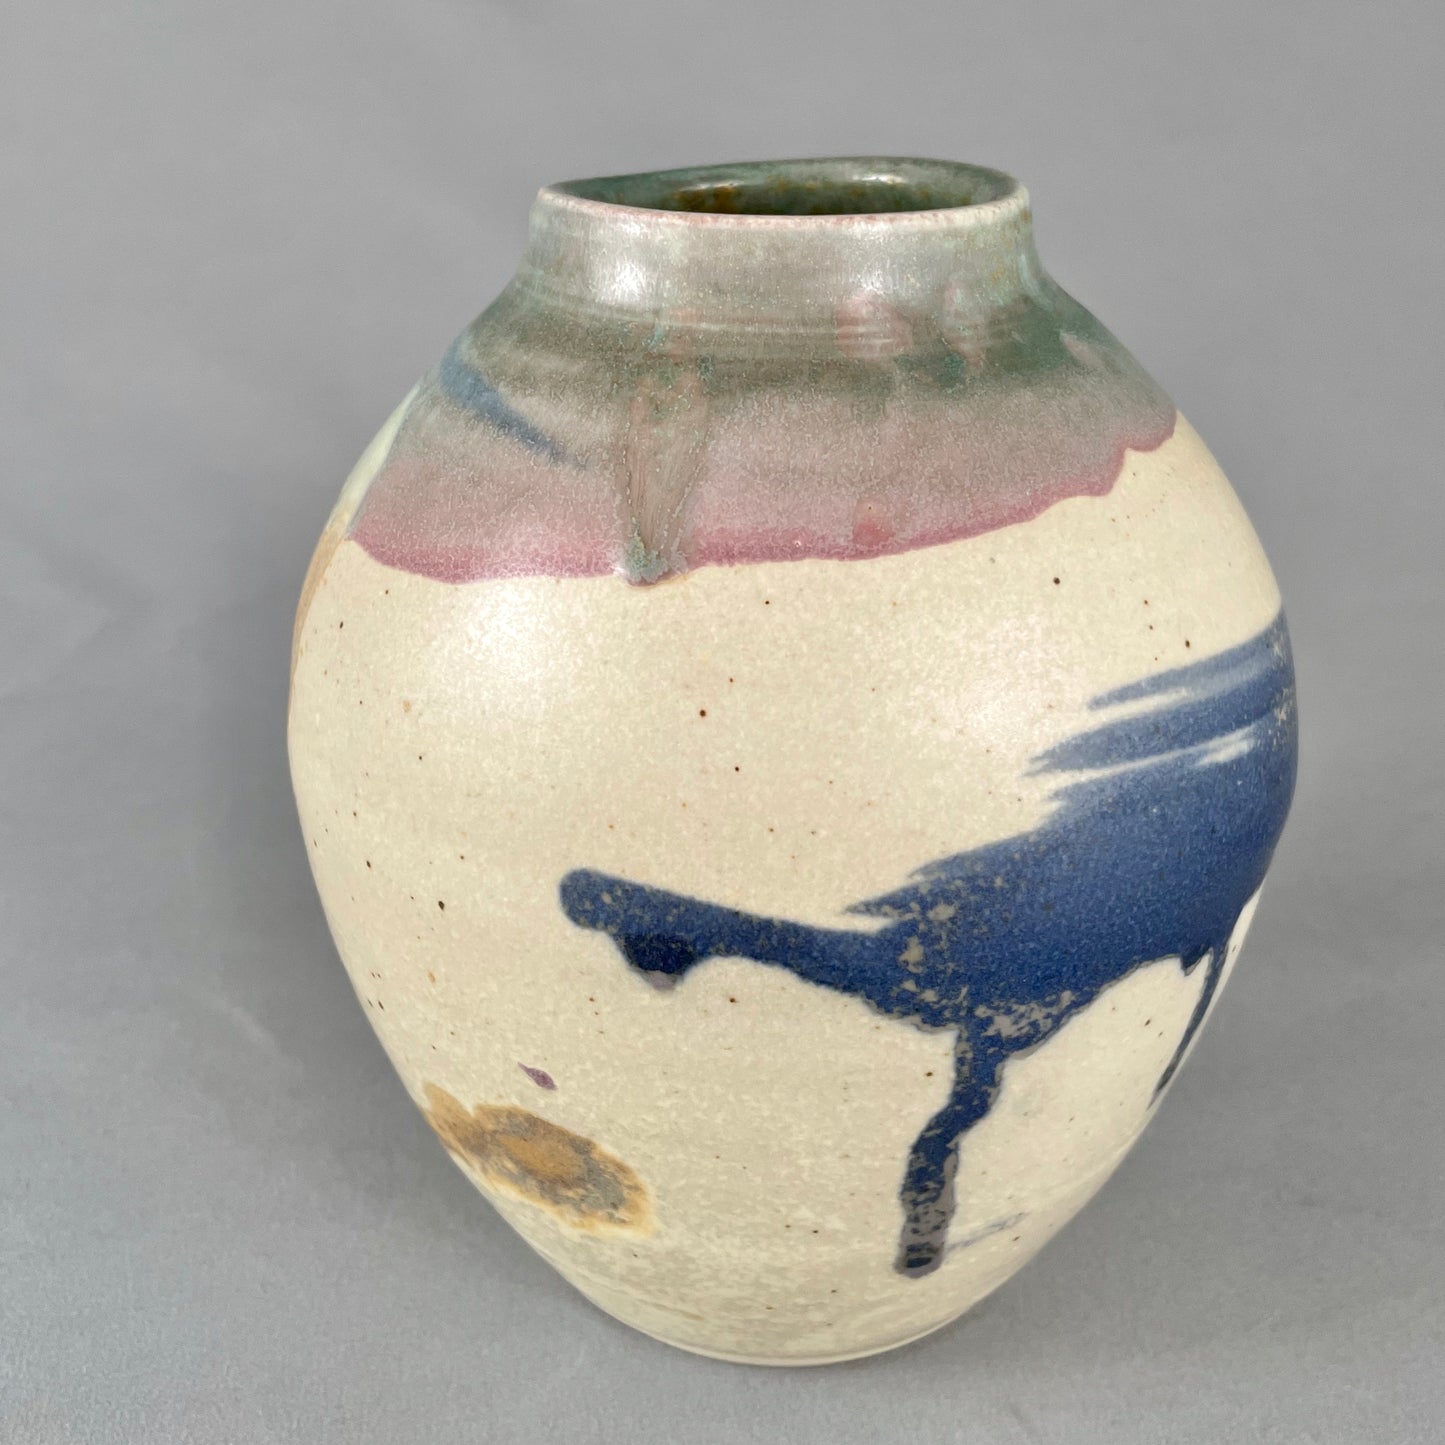 Speckled sand/abstract design vase